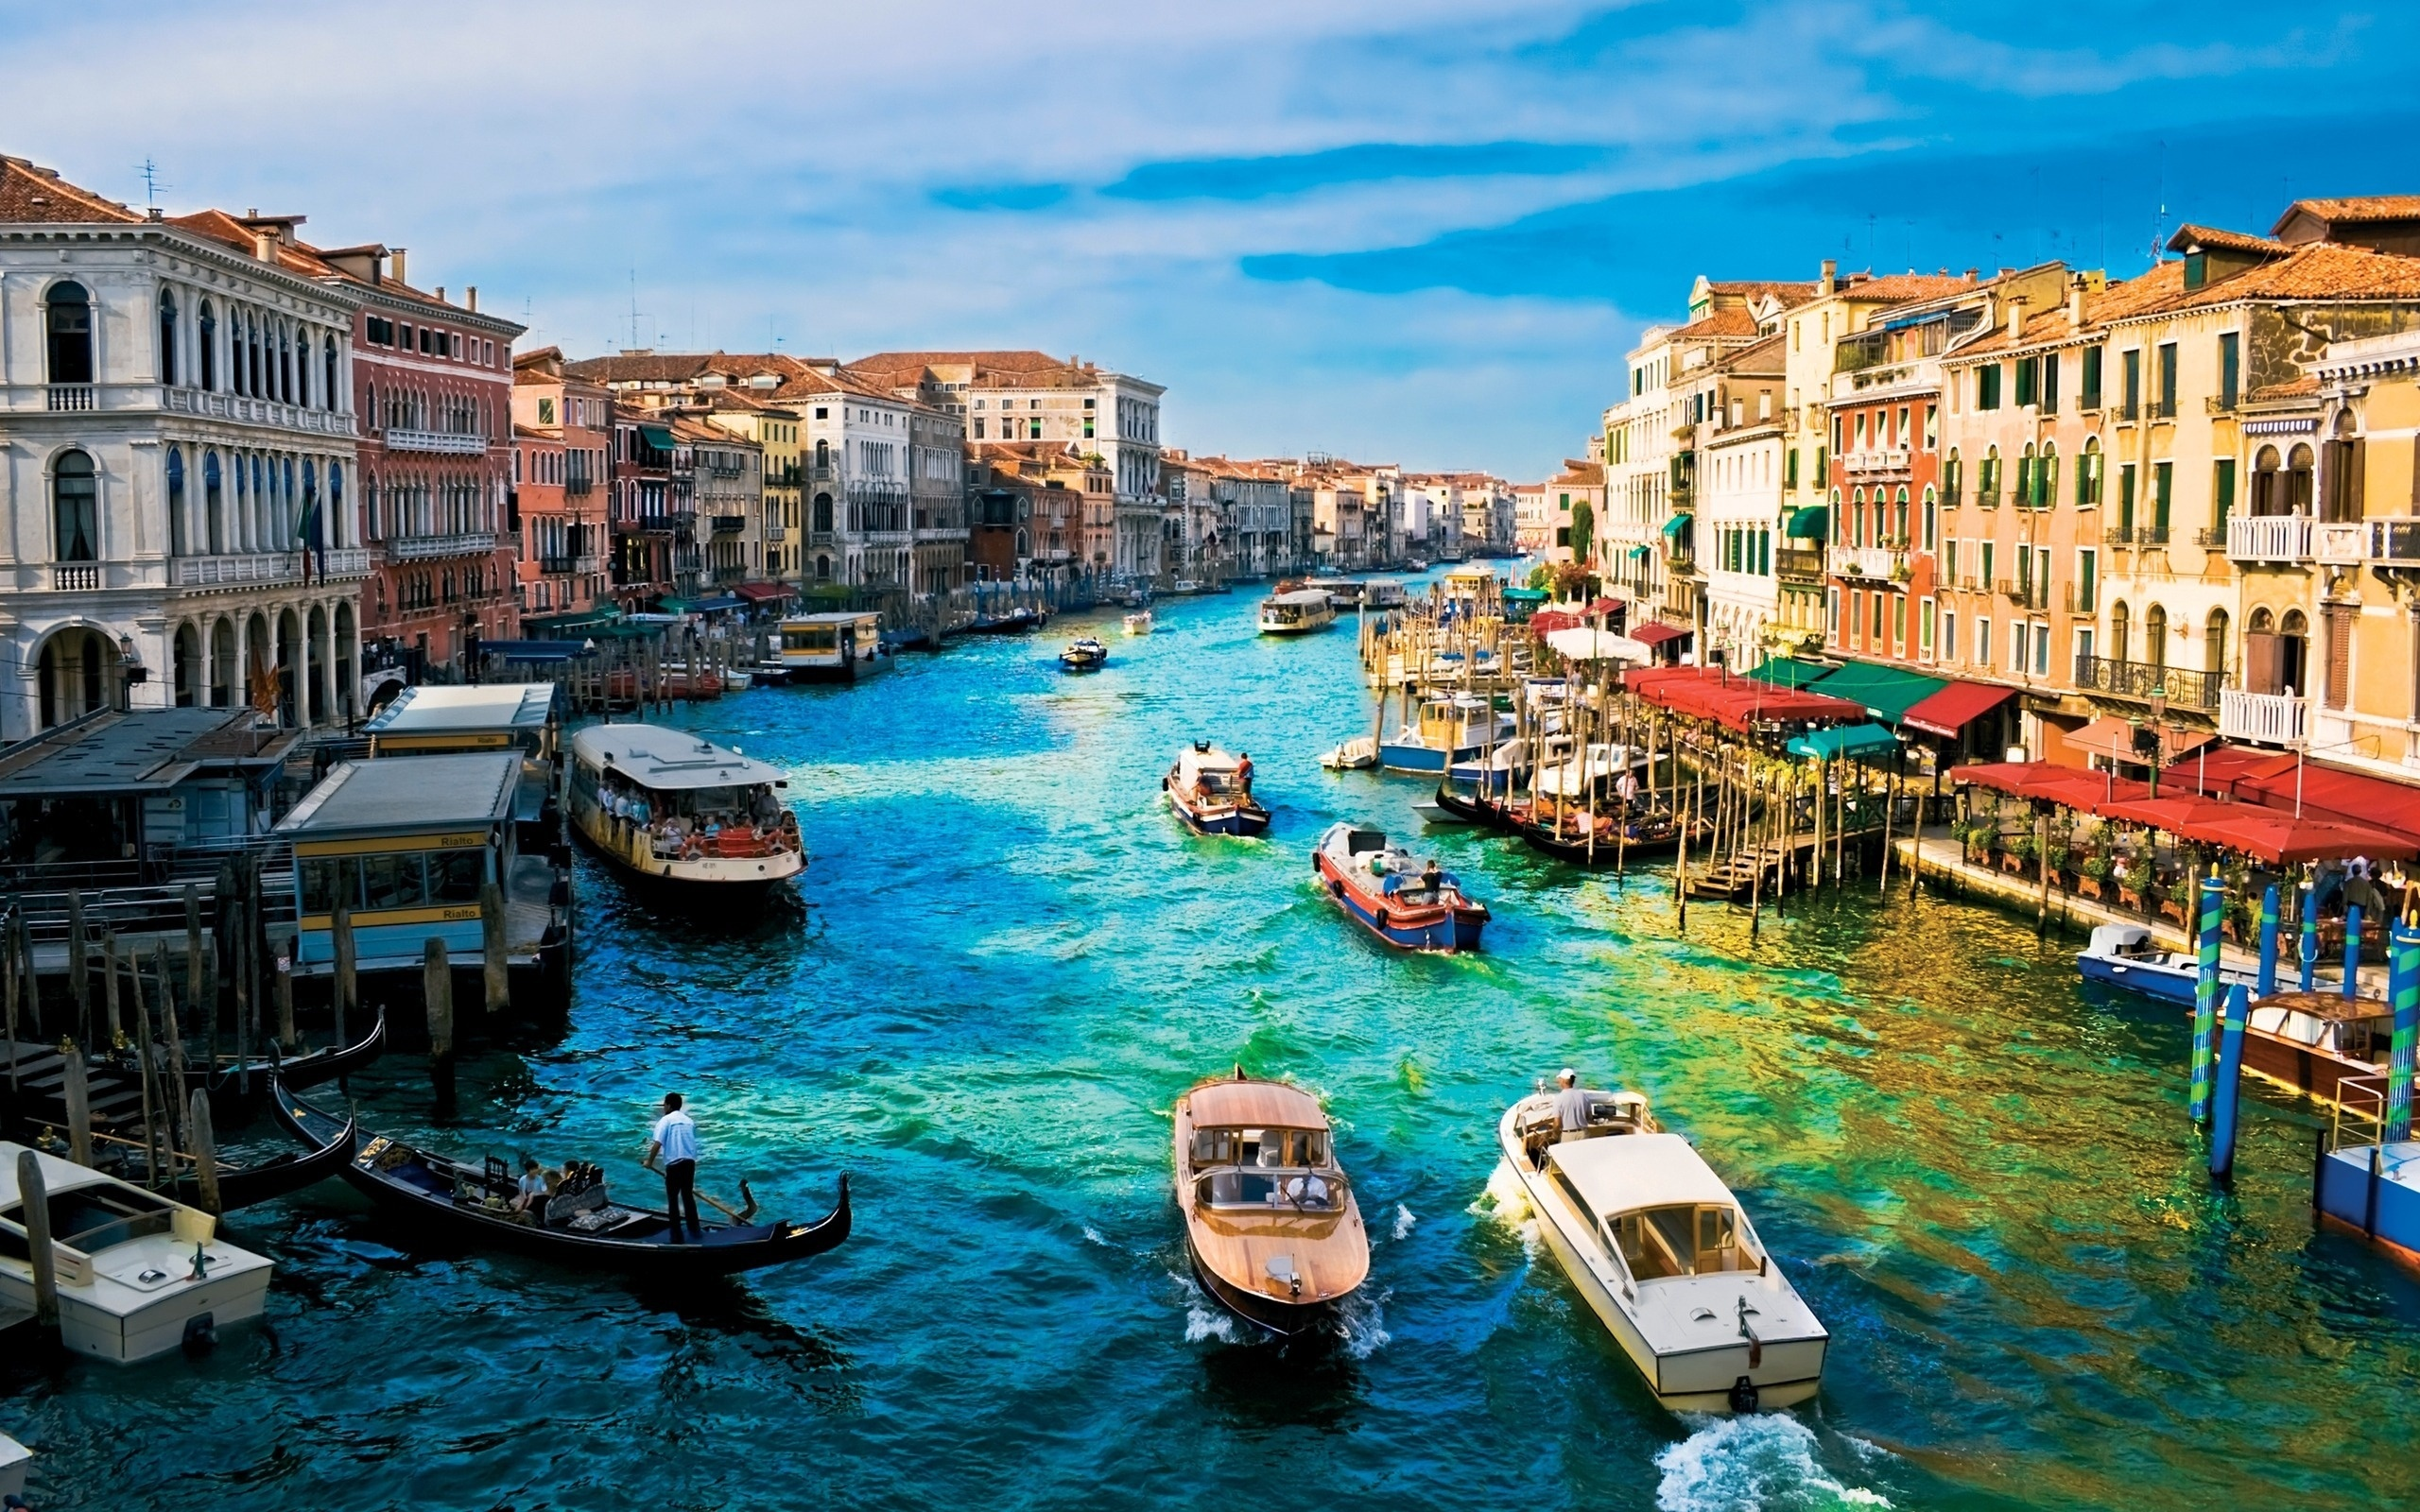 лодки, венеция, дома